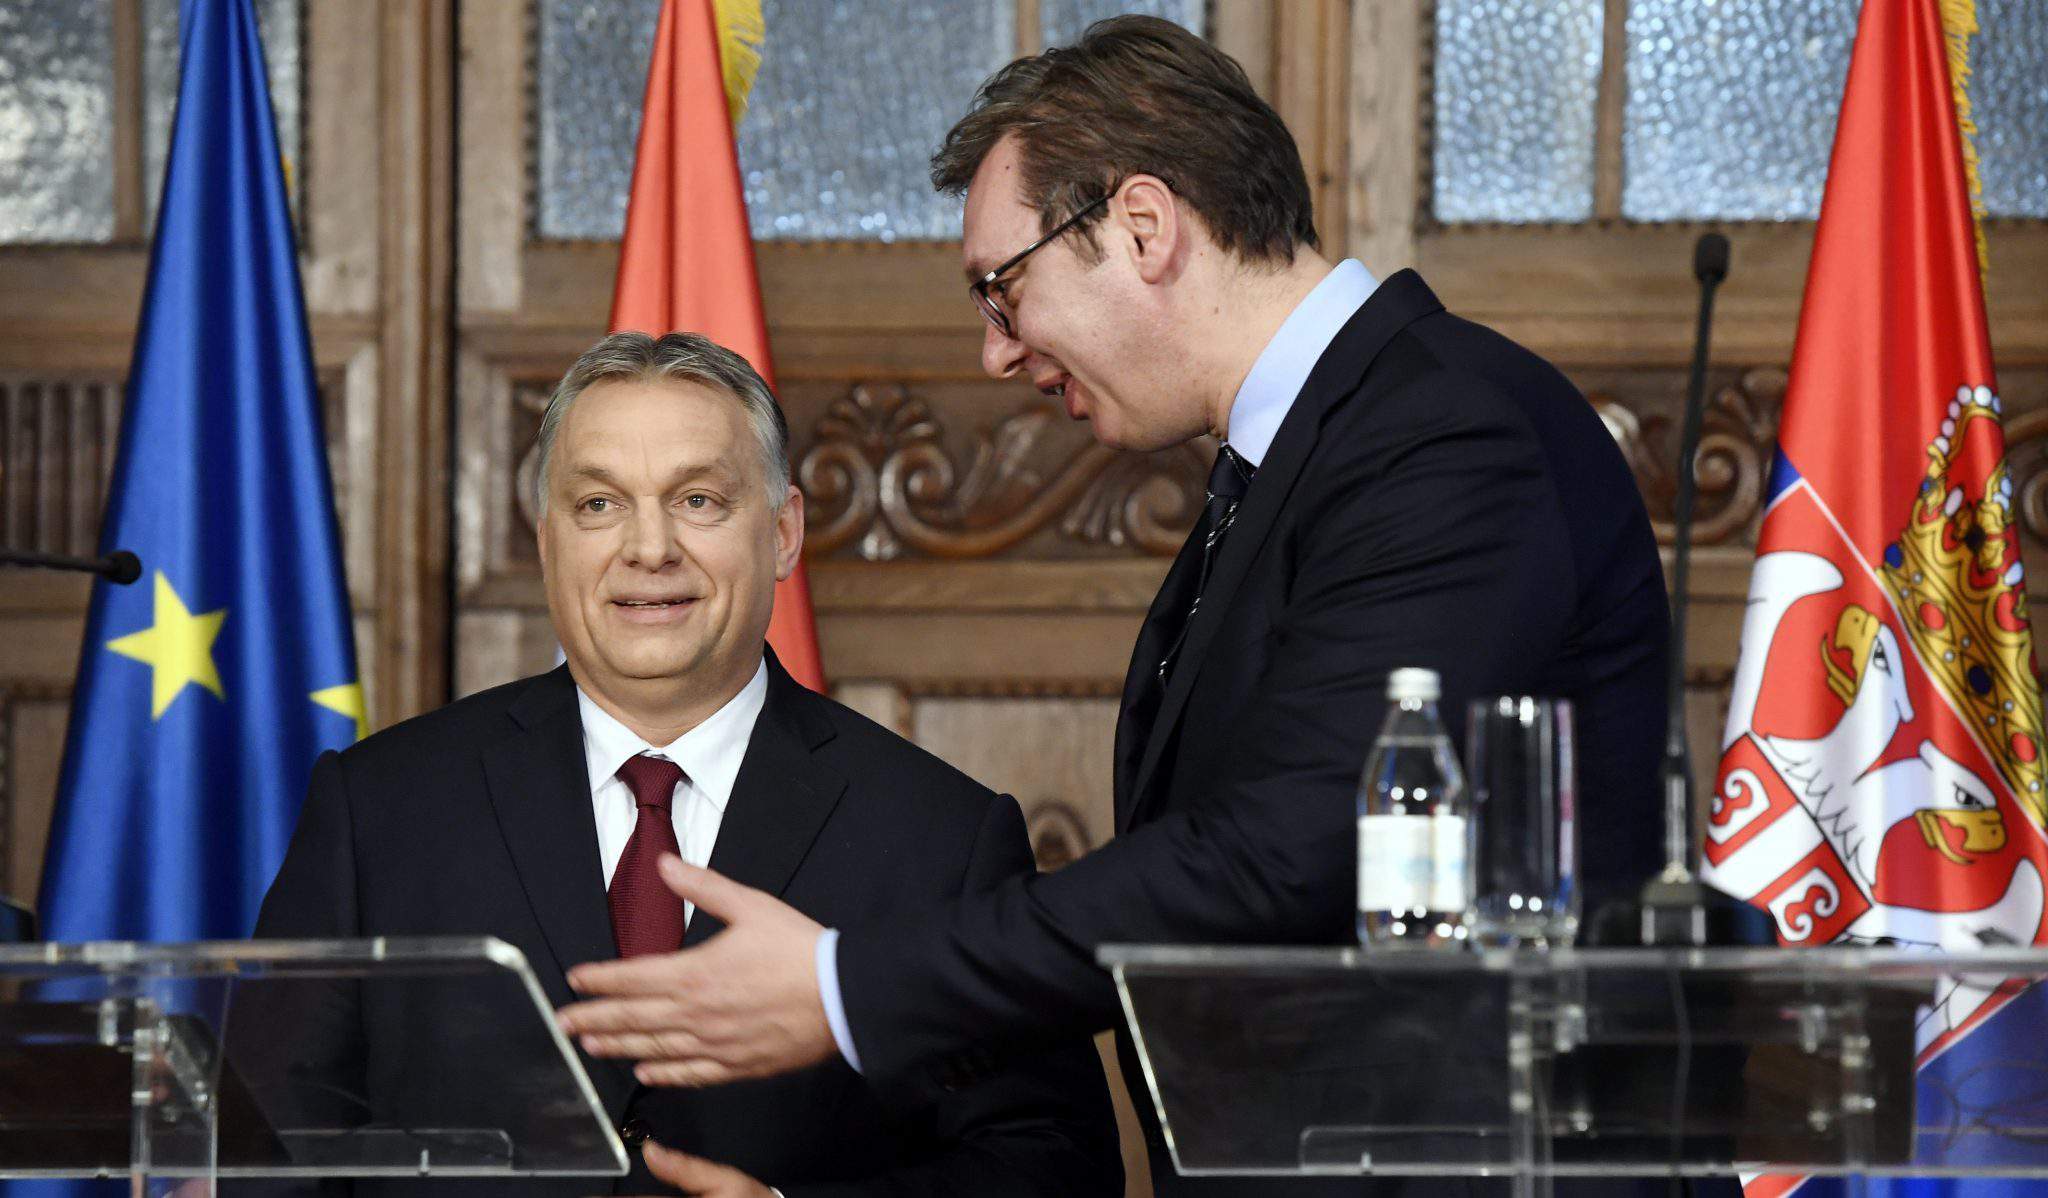 Orbán Vucic Serbien ethnisch